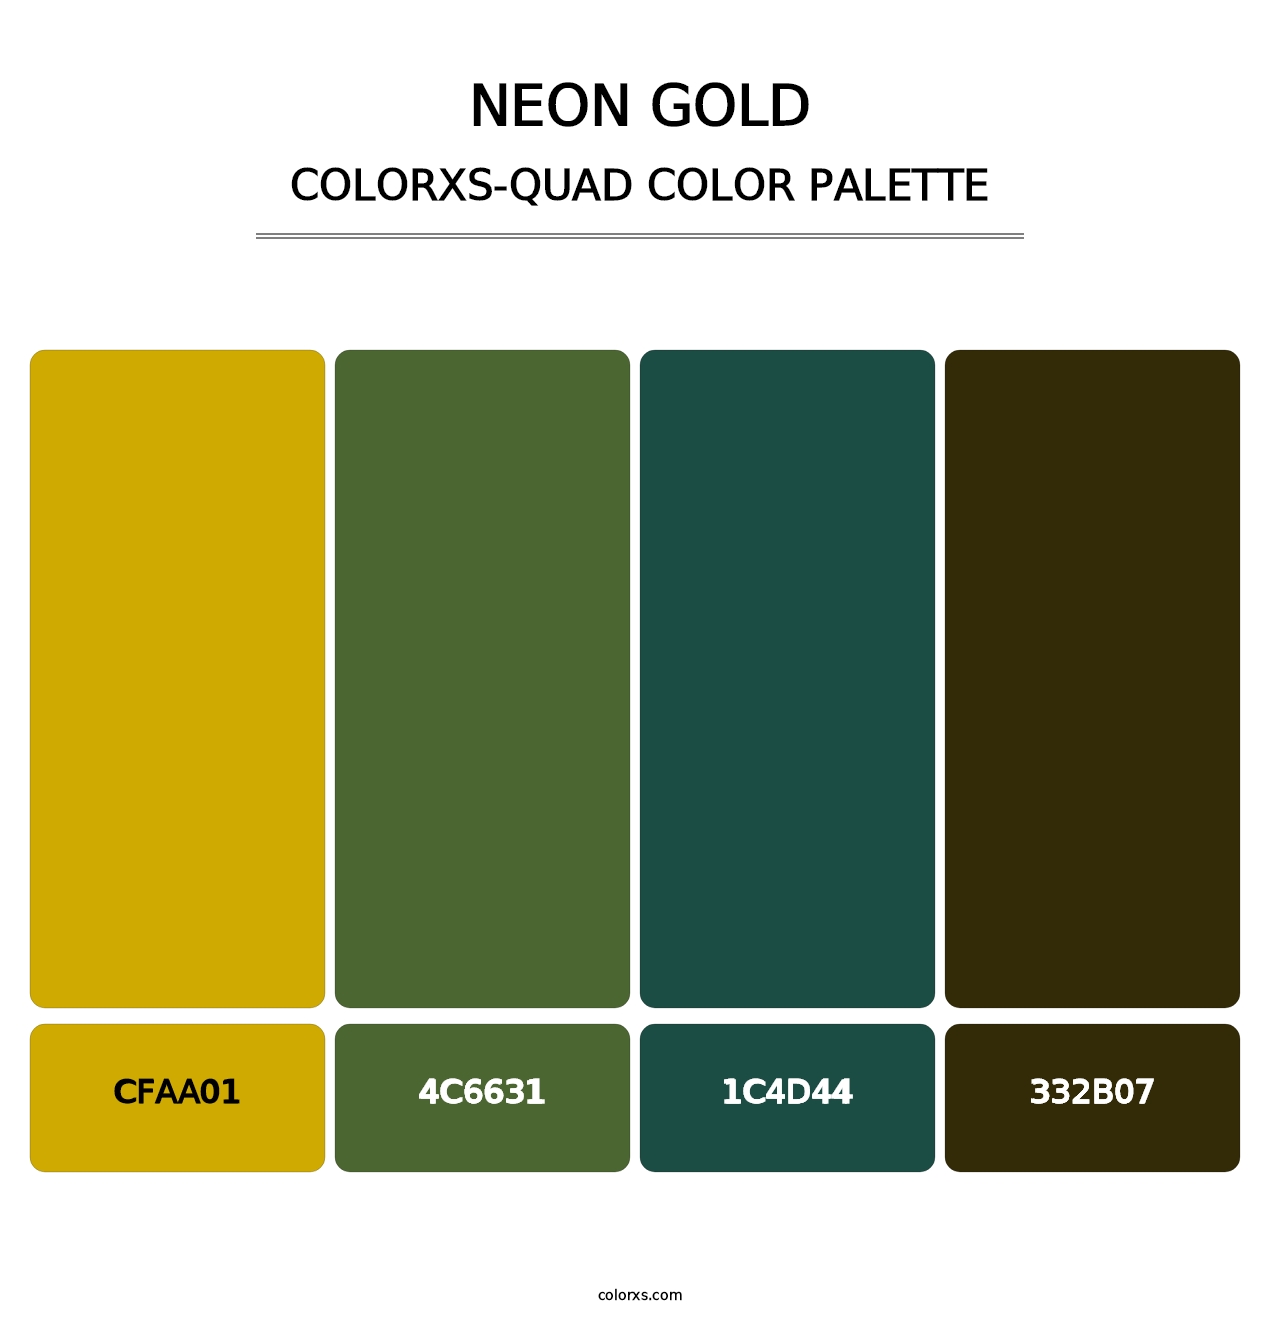 Neon Gold - Colorxs Quad Palette